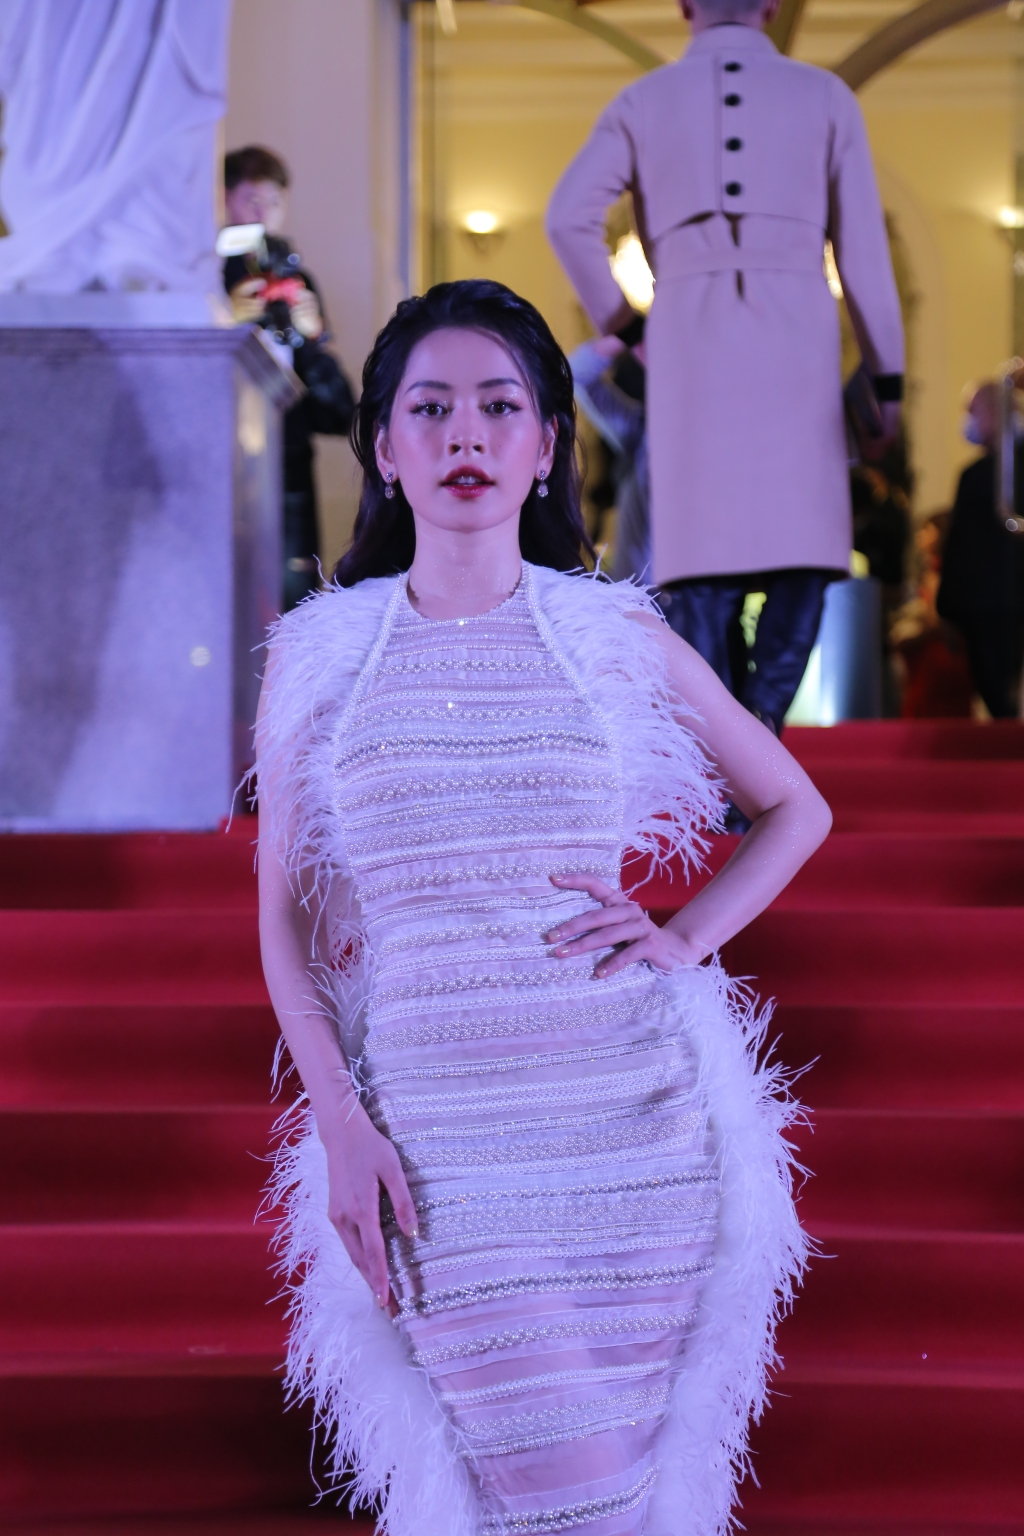 'Ngôi sao xanh 2020' đánh dấu mốc son mới của Chi Pu và loạt nghệ sĩ Việt ở hạng mục Điện ảnh, Truyền hình